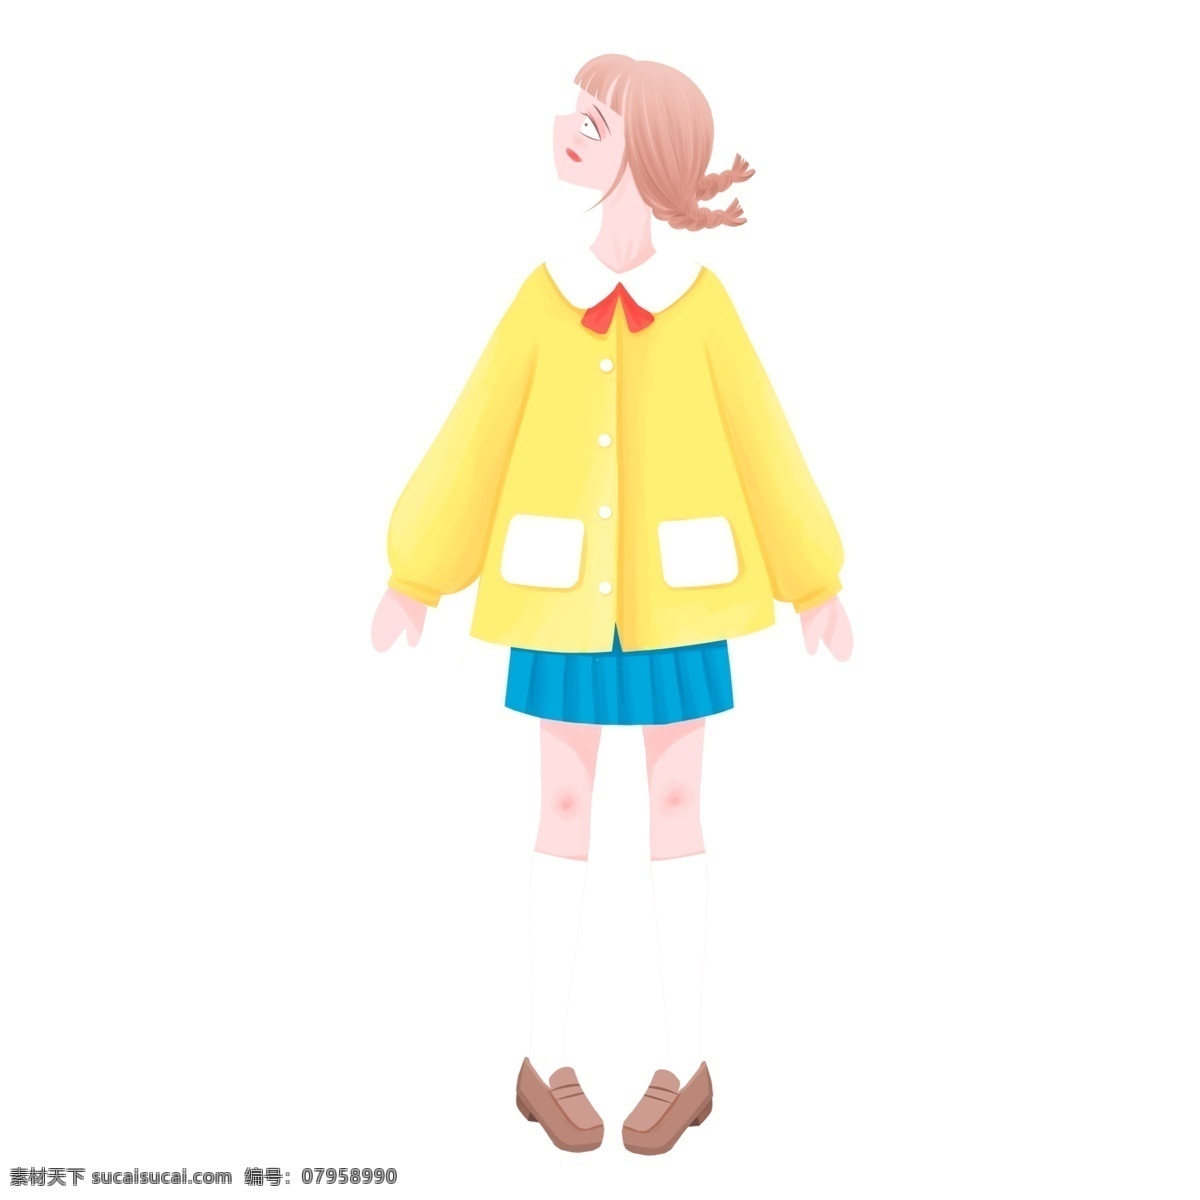 日 系 清新 一个 小女 生 插画 日系 可爱 卡通 女孩子 人物 裙子 短裙 长筒袜 日系风格